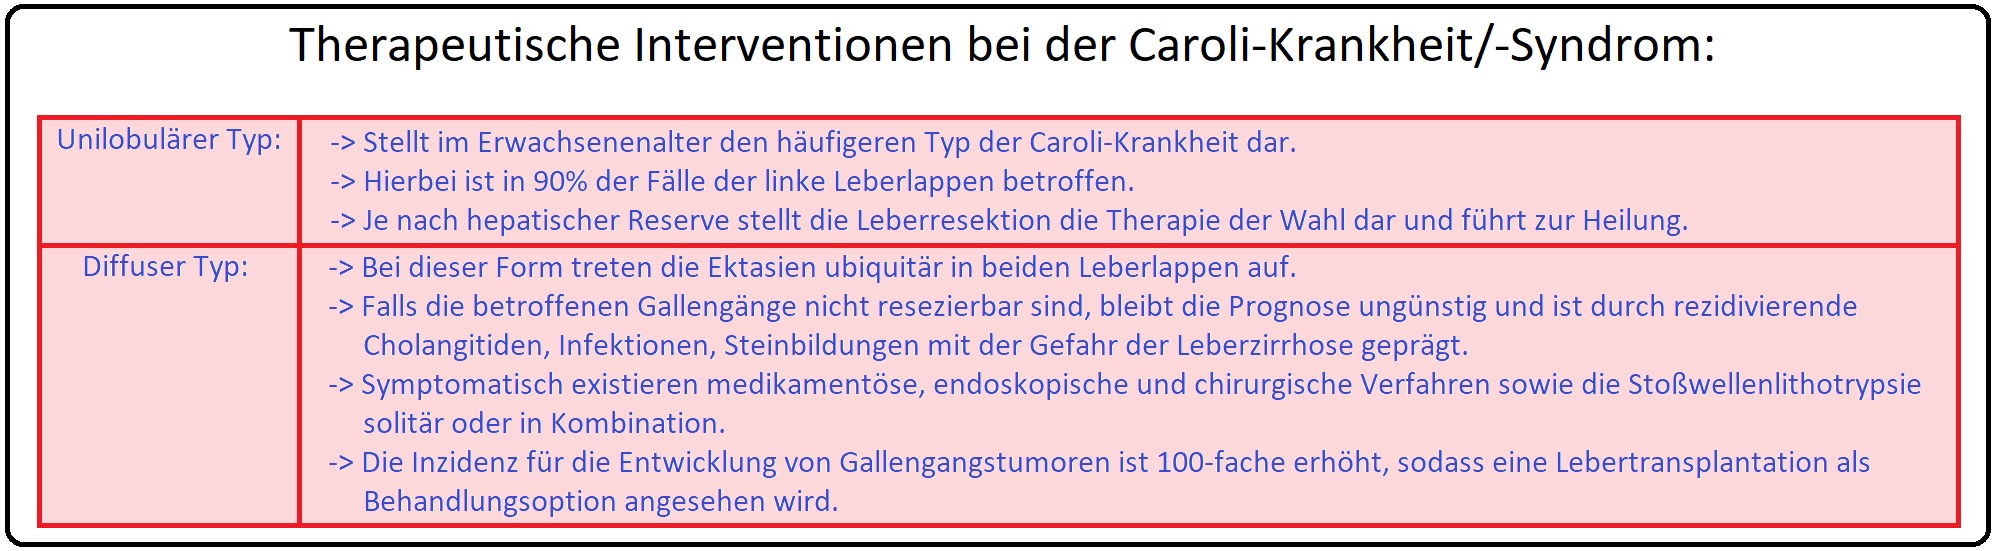 945 Therapeutische Interventionen bei der Caroli Krankheit bzw.  Syndrom